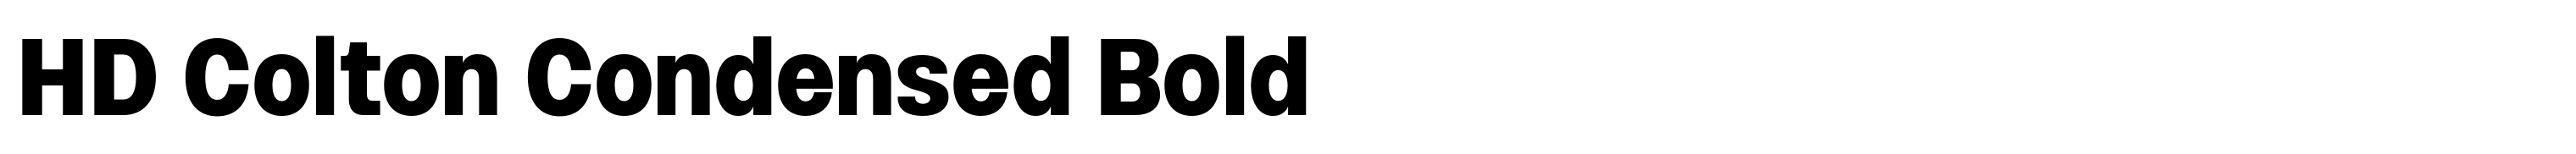 HD Colton Condensed Bold